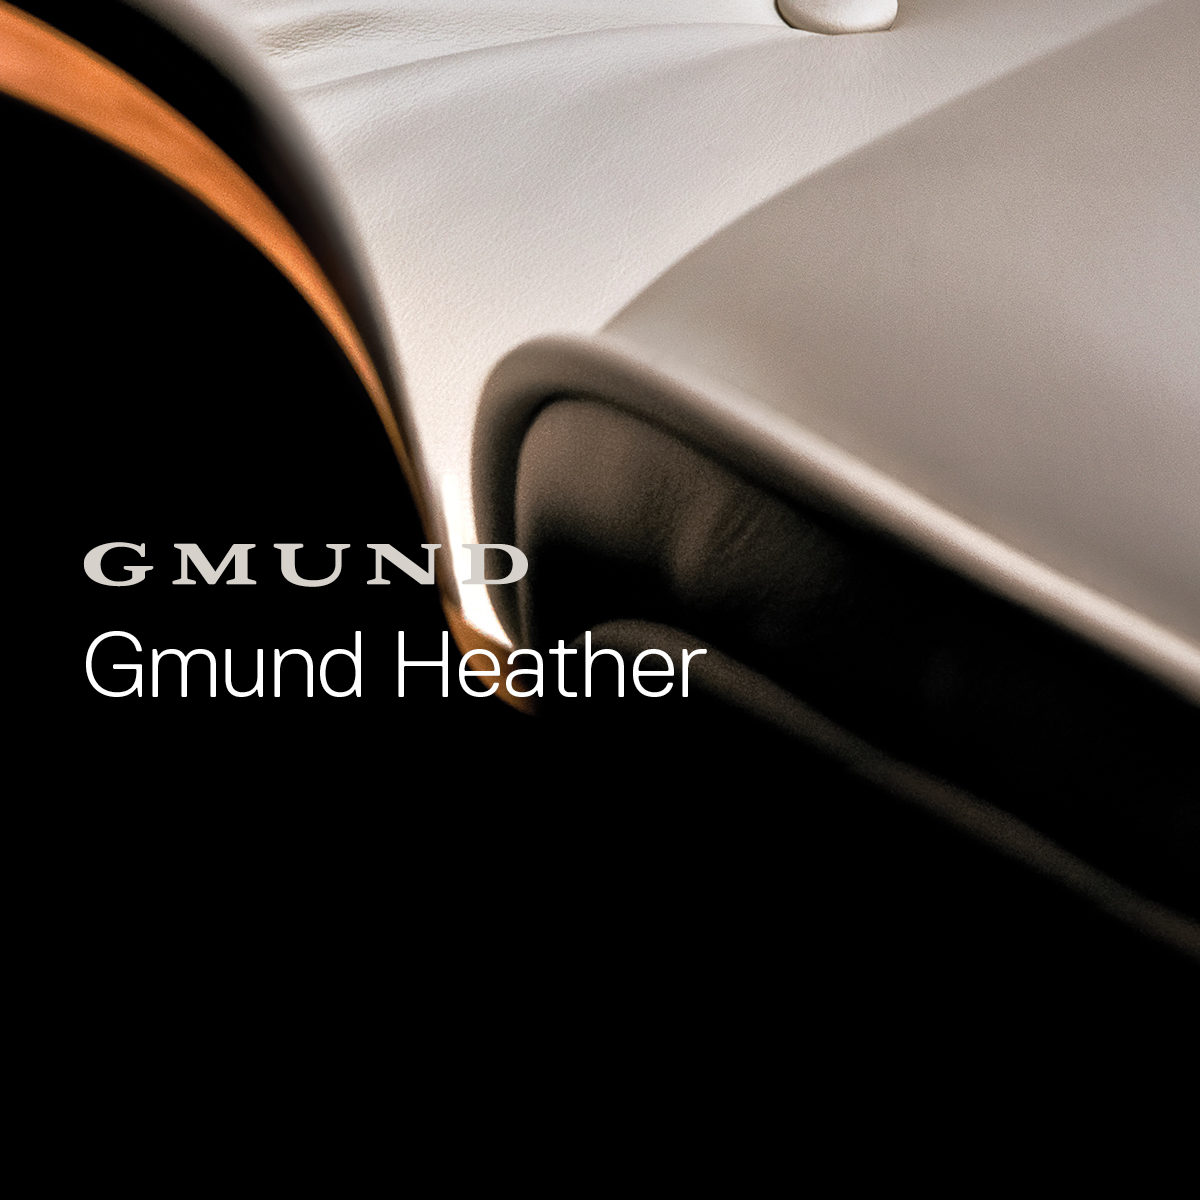 Gmund Heather - Compendium Gmund Heather